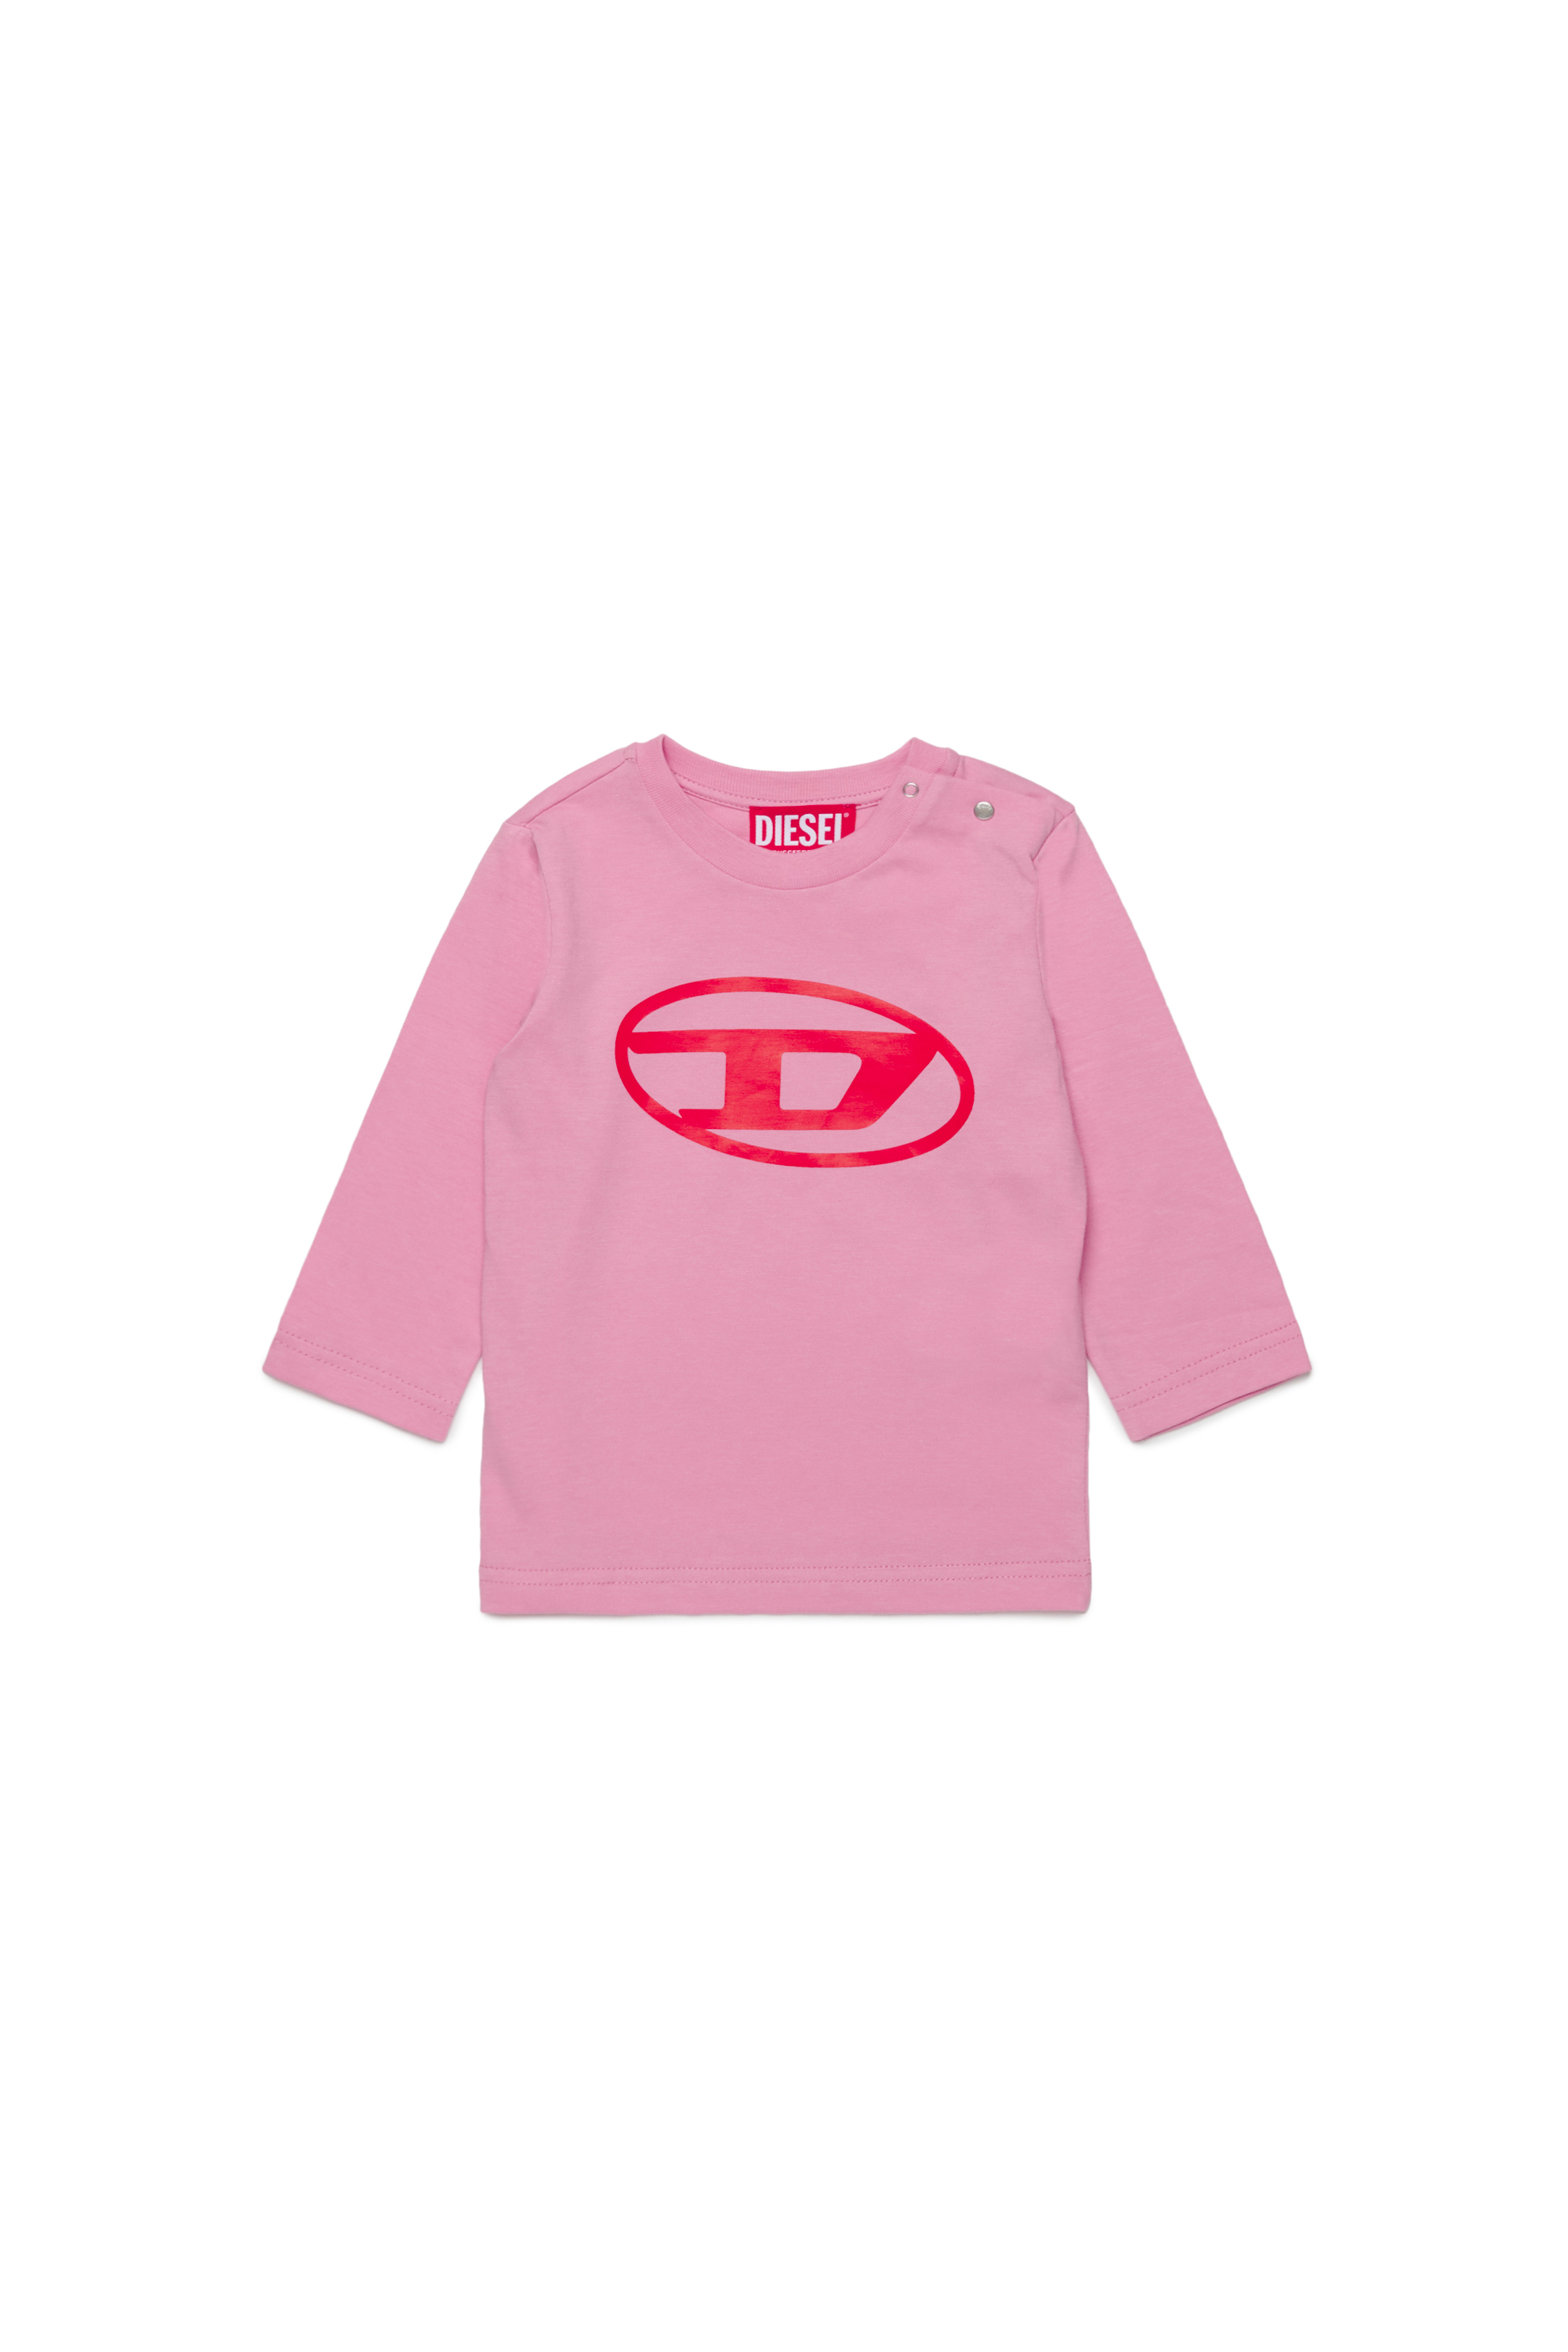 Diesel - TCERBLSB, Unisex Camiseta de manga larga con Oval D in Rosa - Image 1